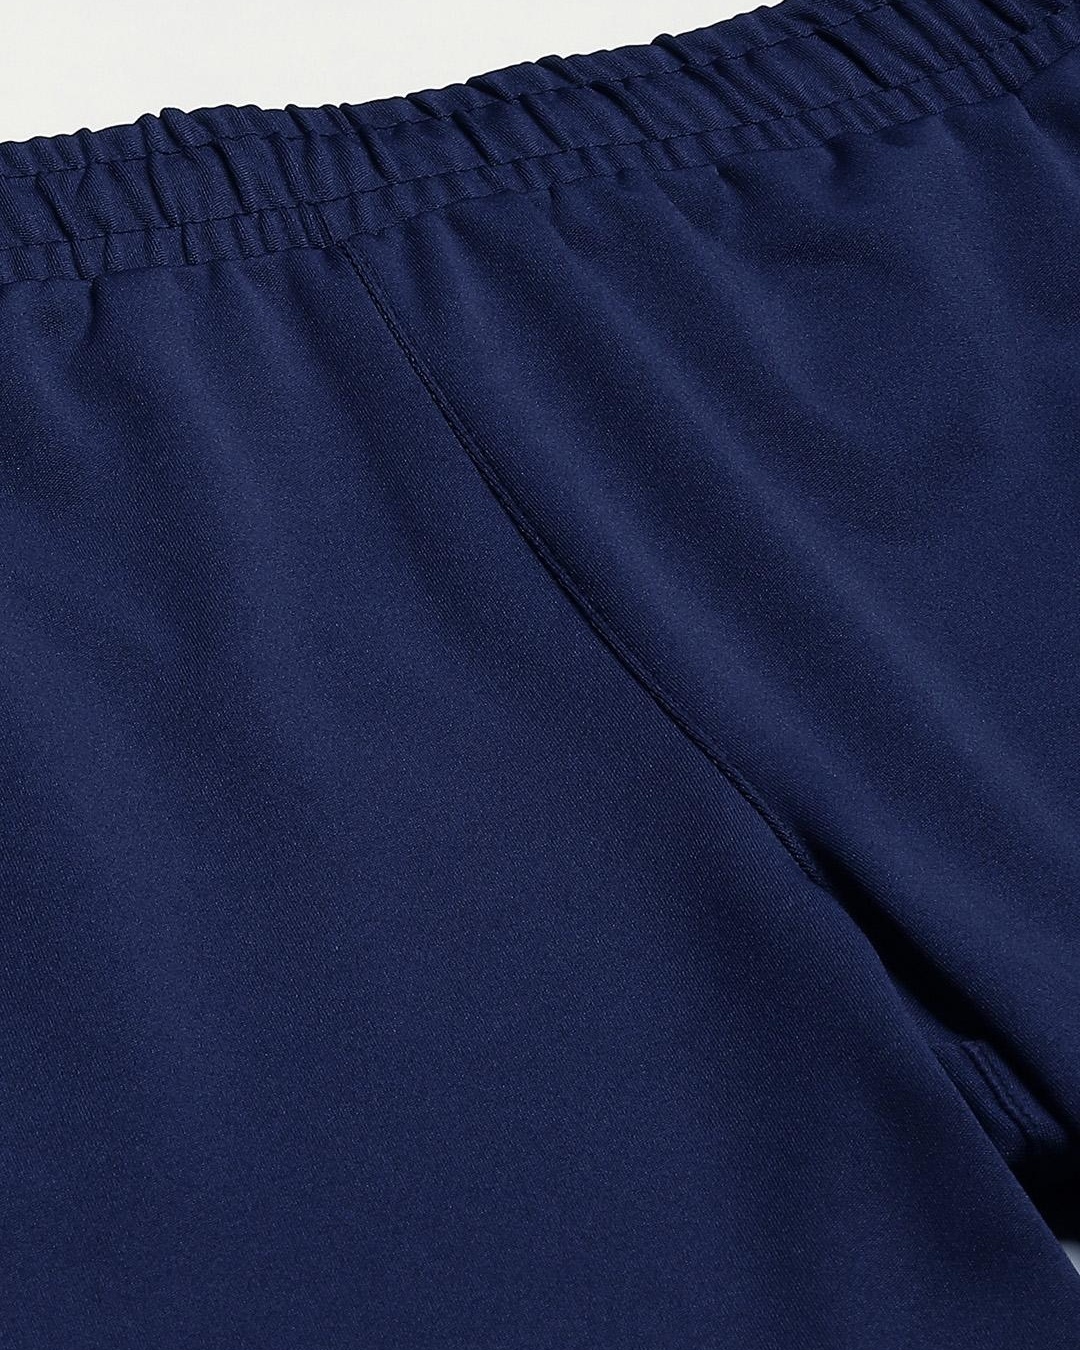 Buy Men's Blue Slim Fit Shorts for Men Blue Online at Bewakoof